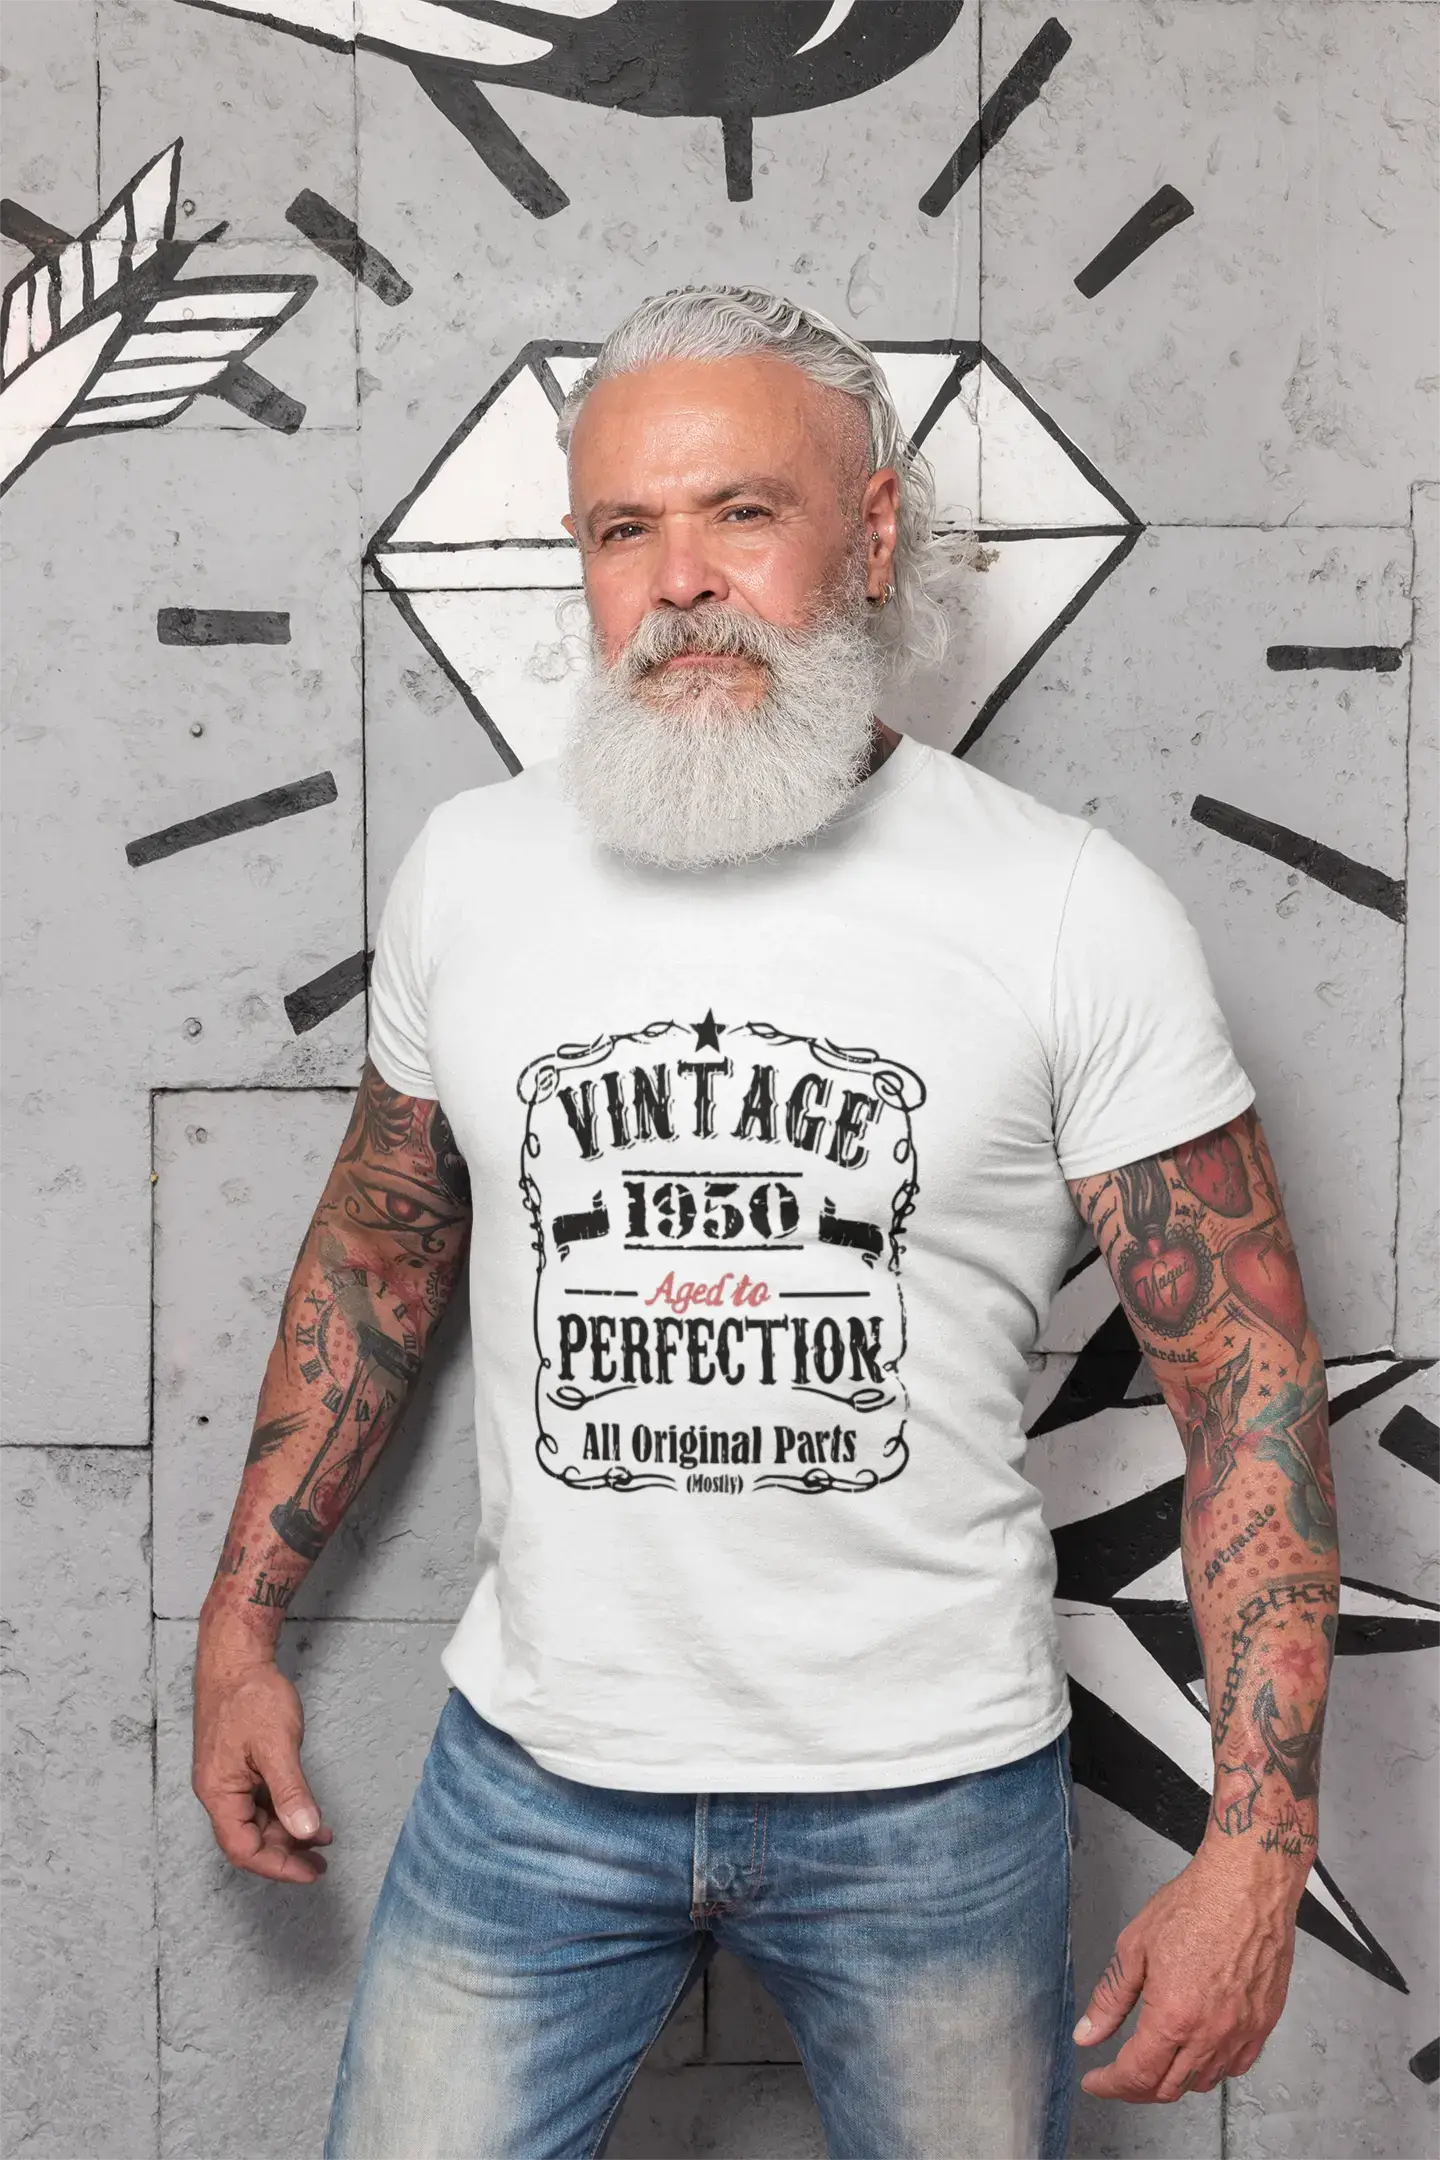 1950 Vintage Aged to Perfection Herren T-Shirt Weiß Geburtstagsgeschenk 00488